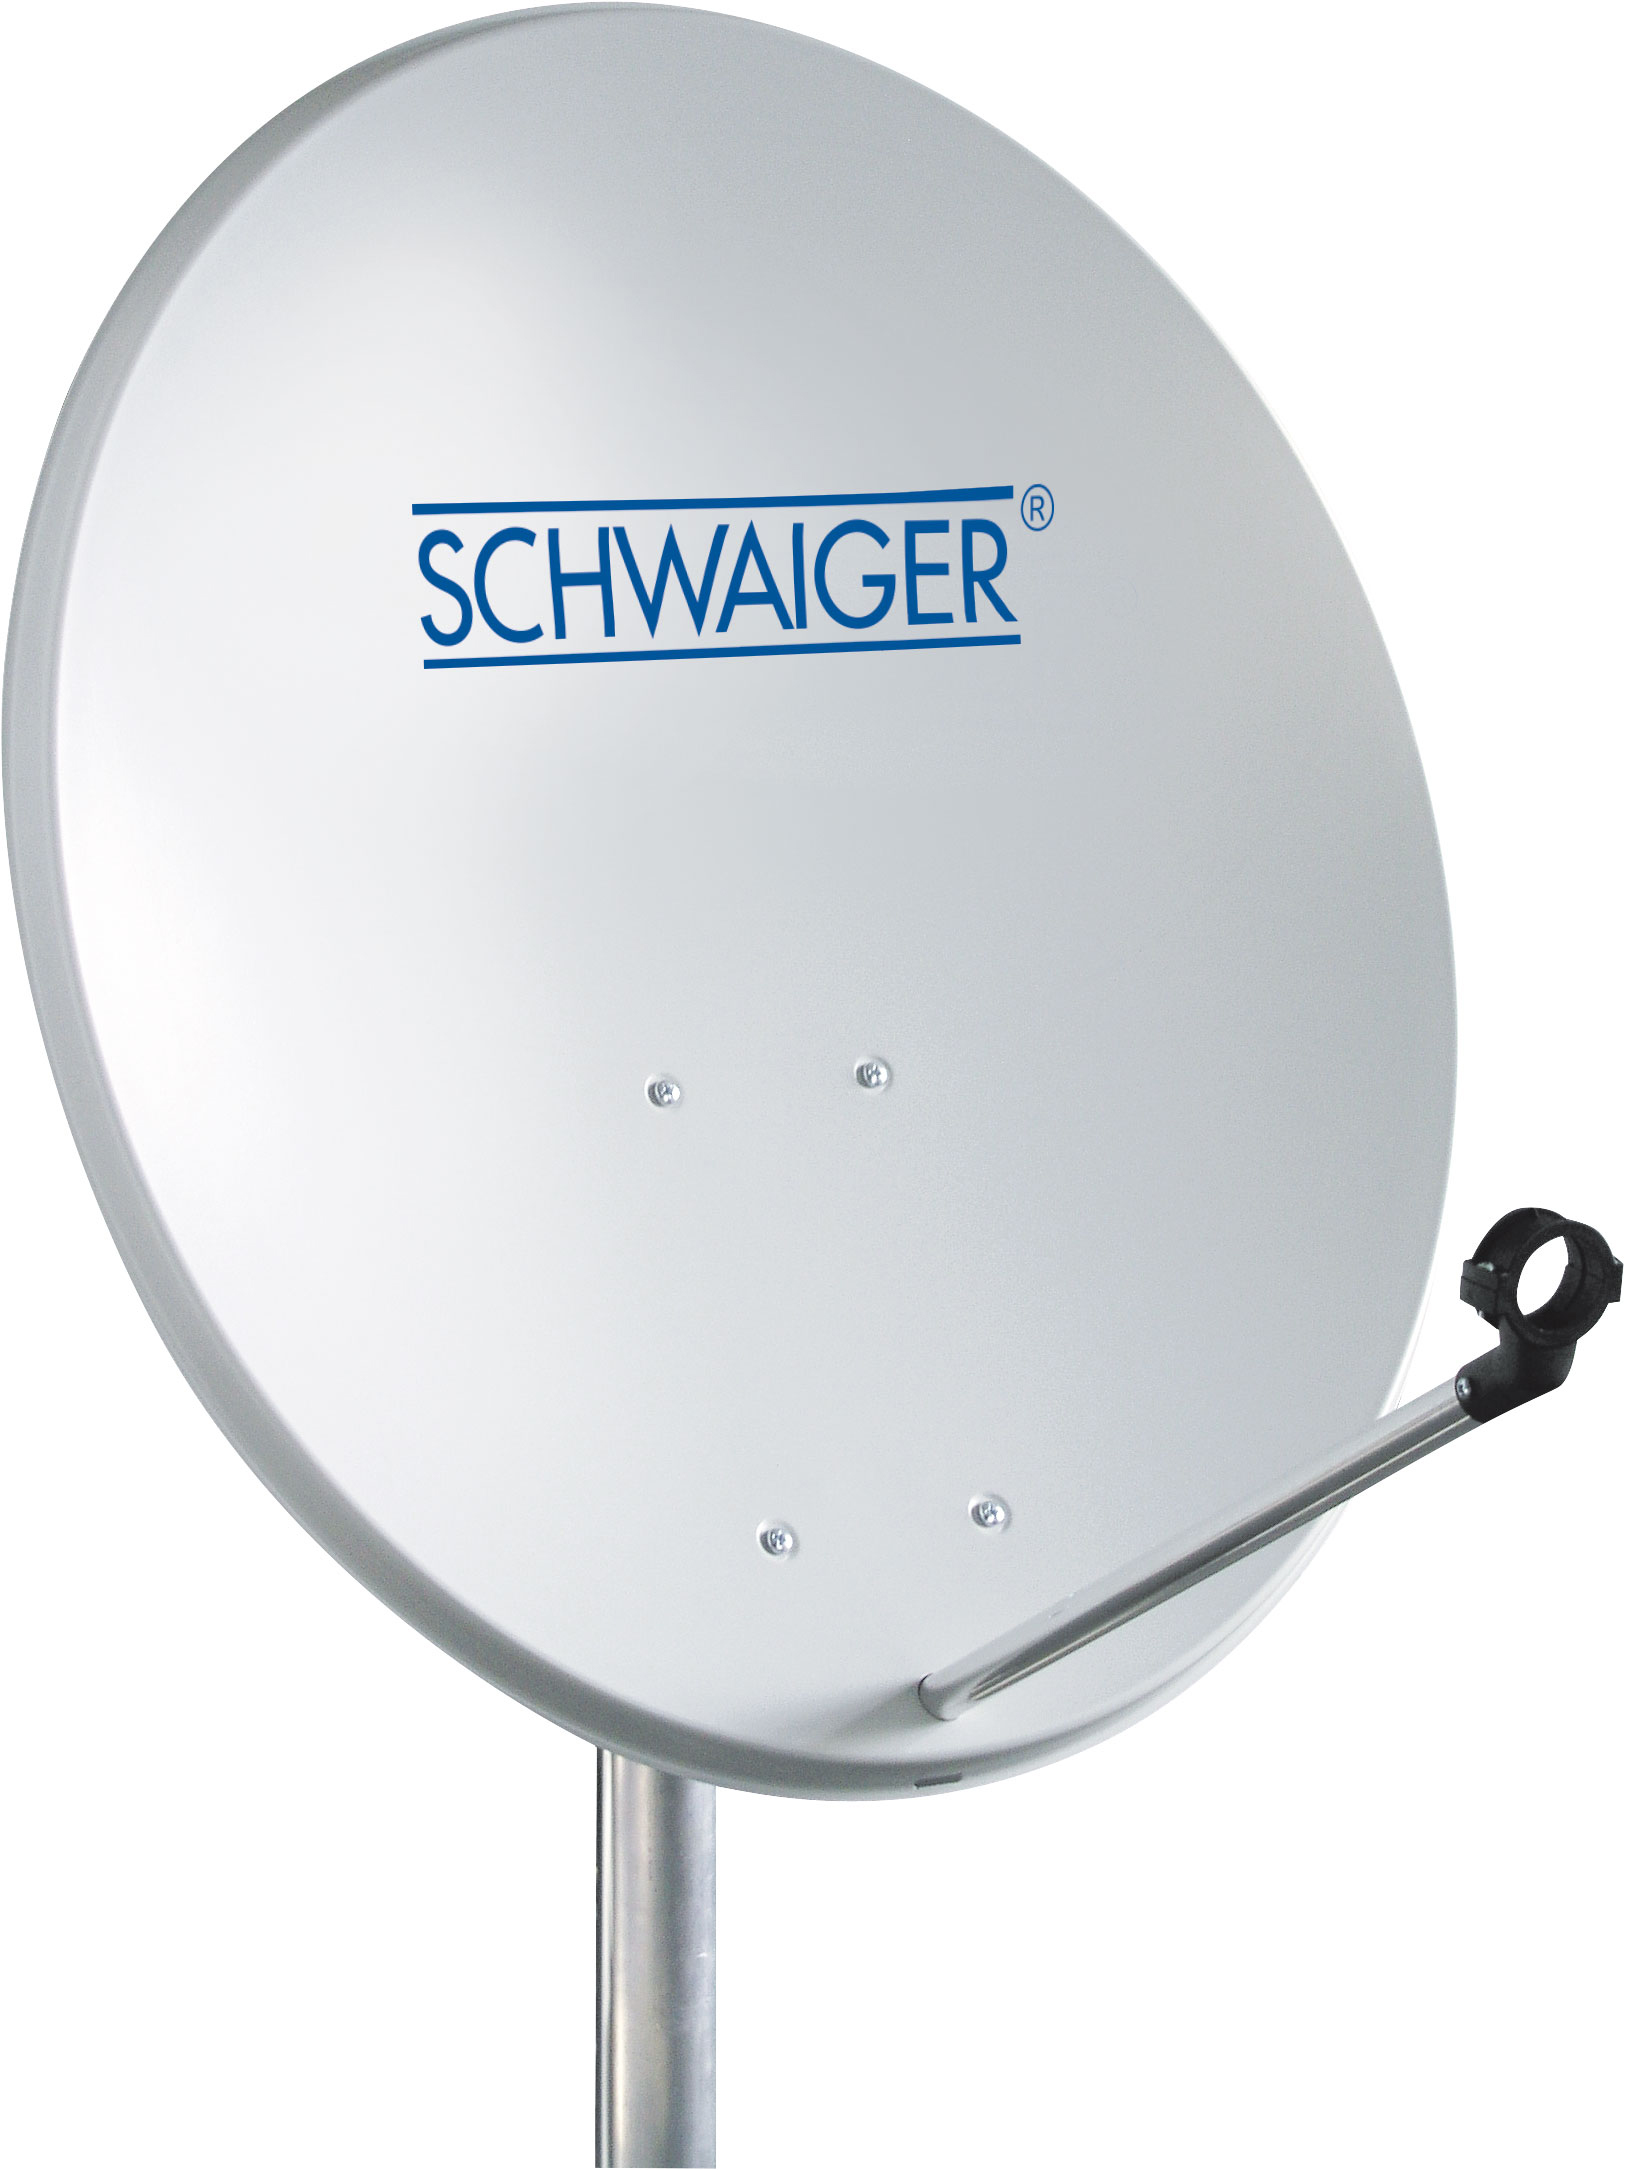 Single Anlage SCHWAIGER -719758- Satelliten Set, SAT LNB) cm, (55